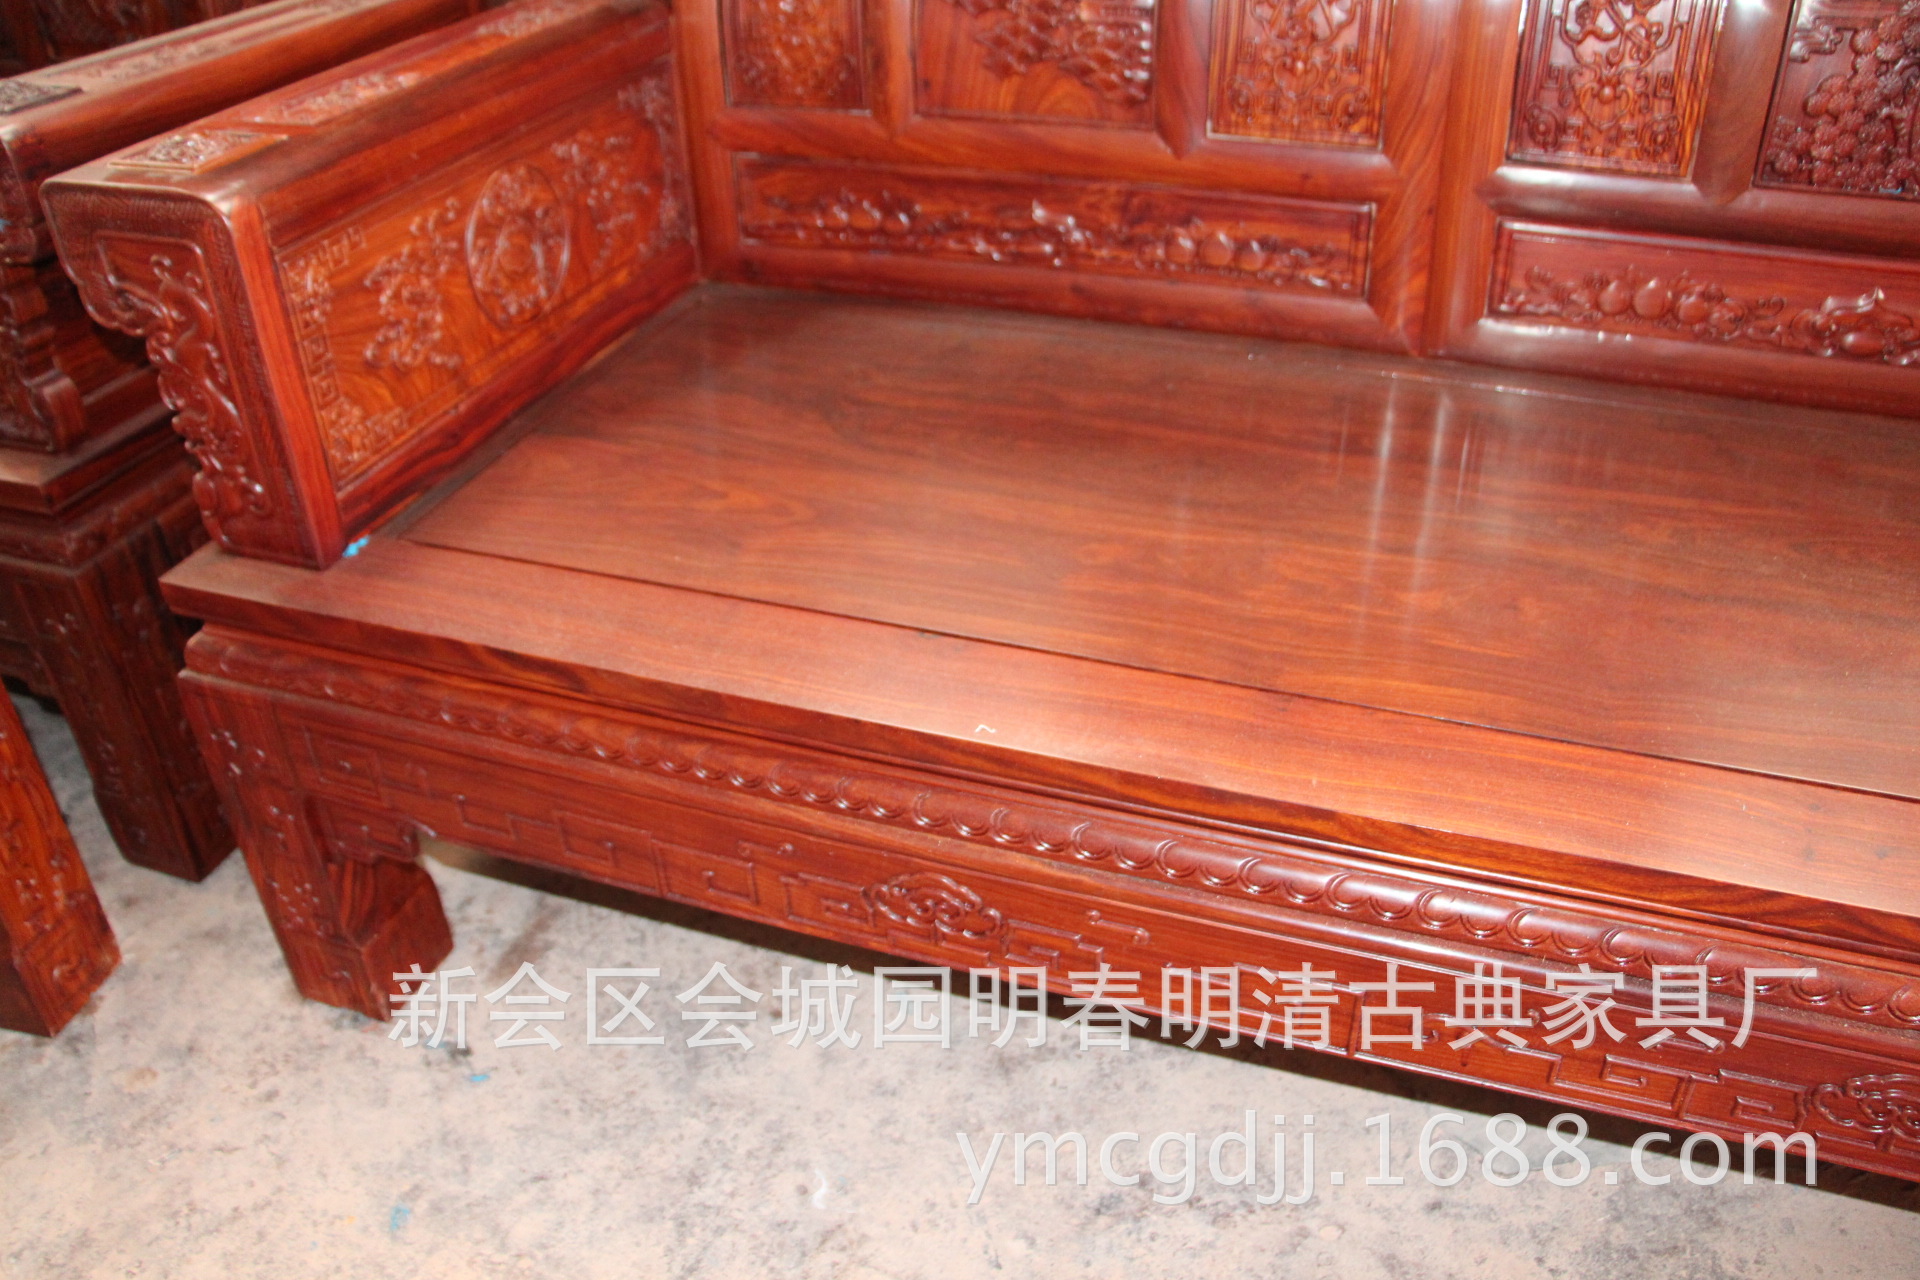 中式红木家具 古典家具 新会古典家具 小叶红檀